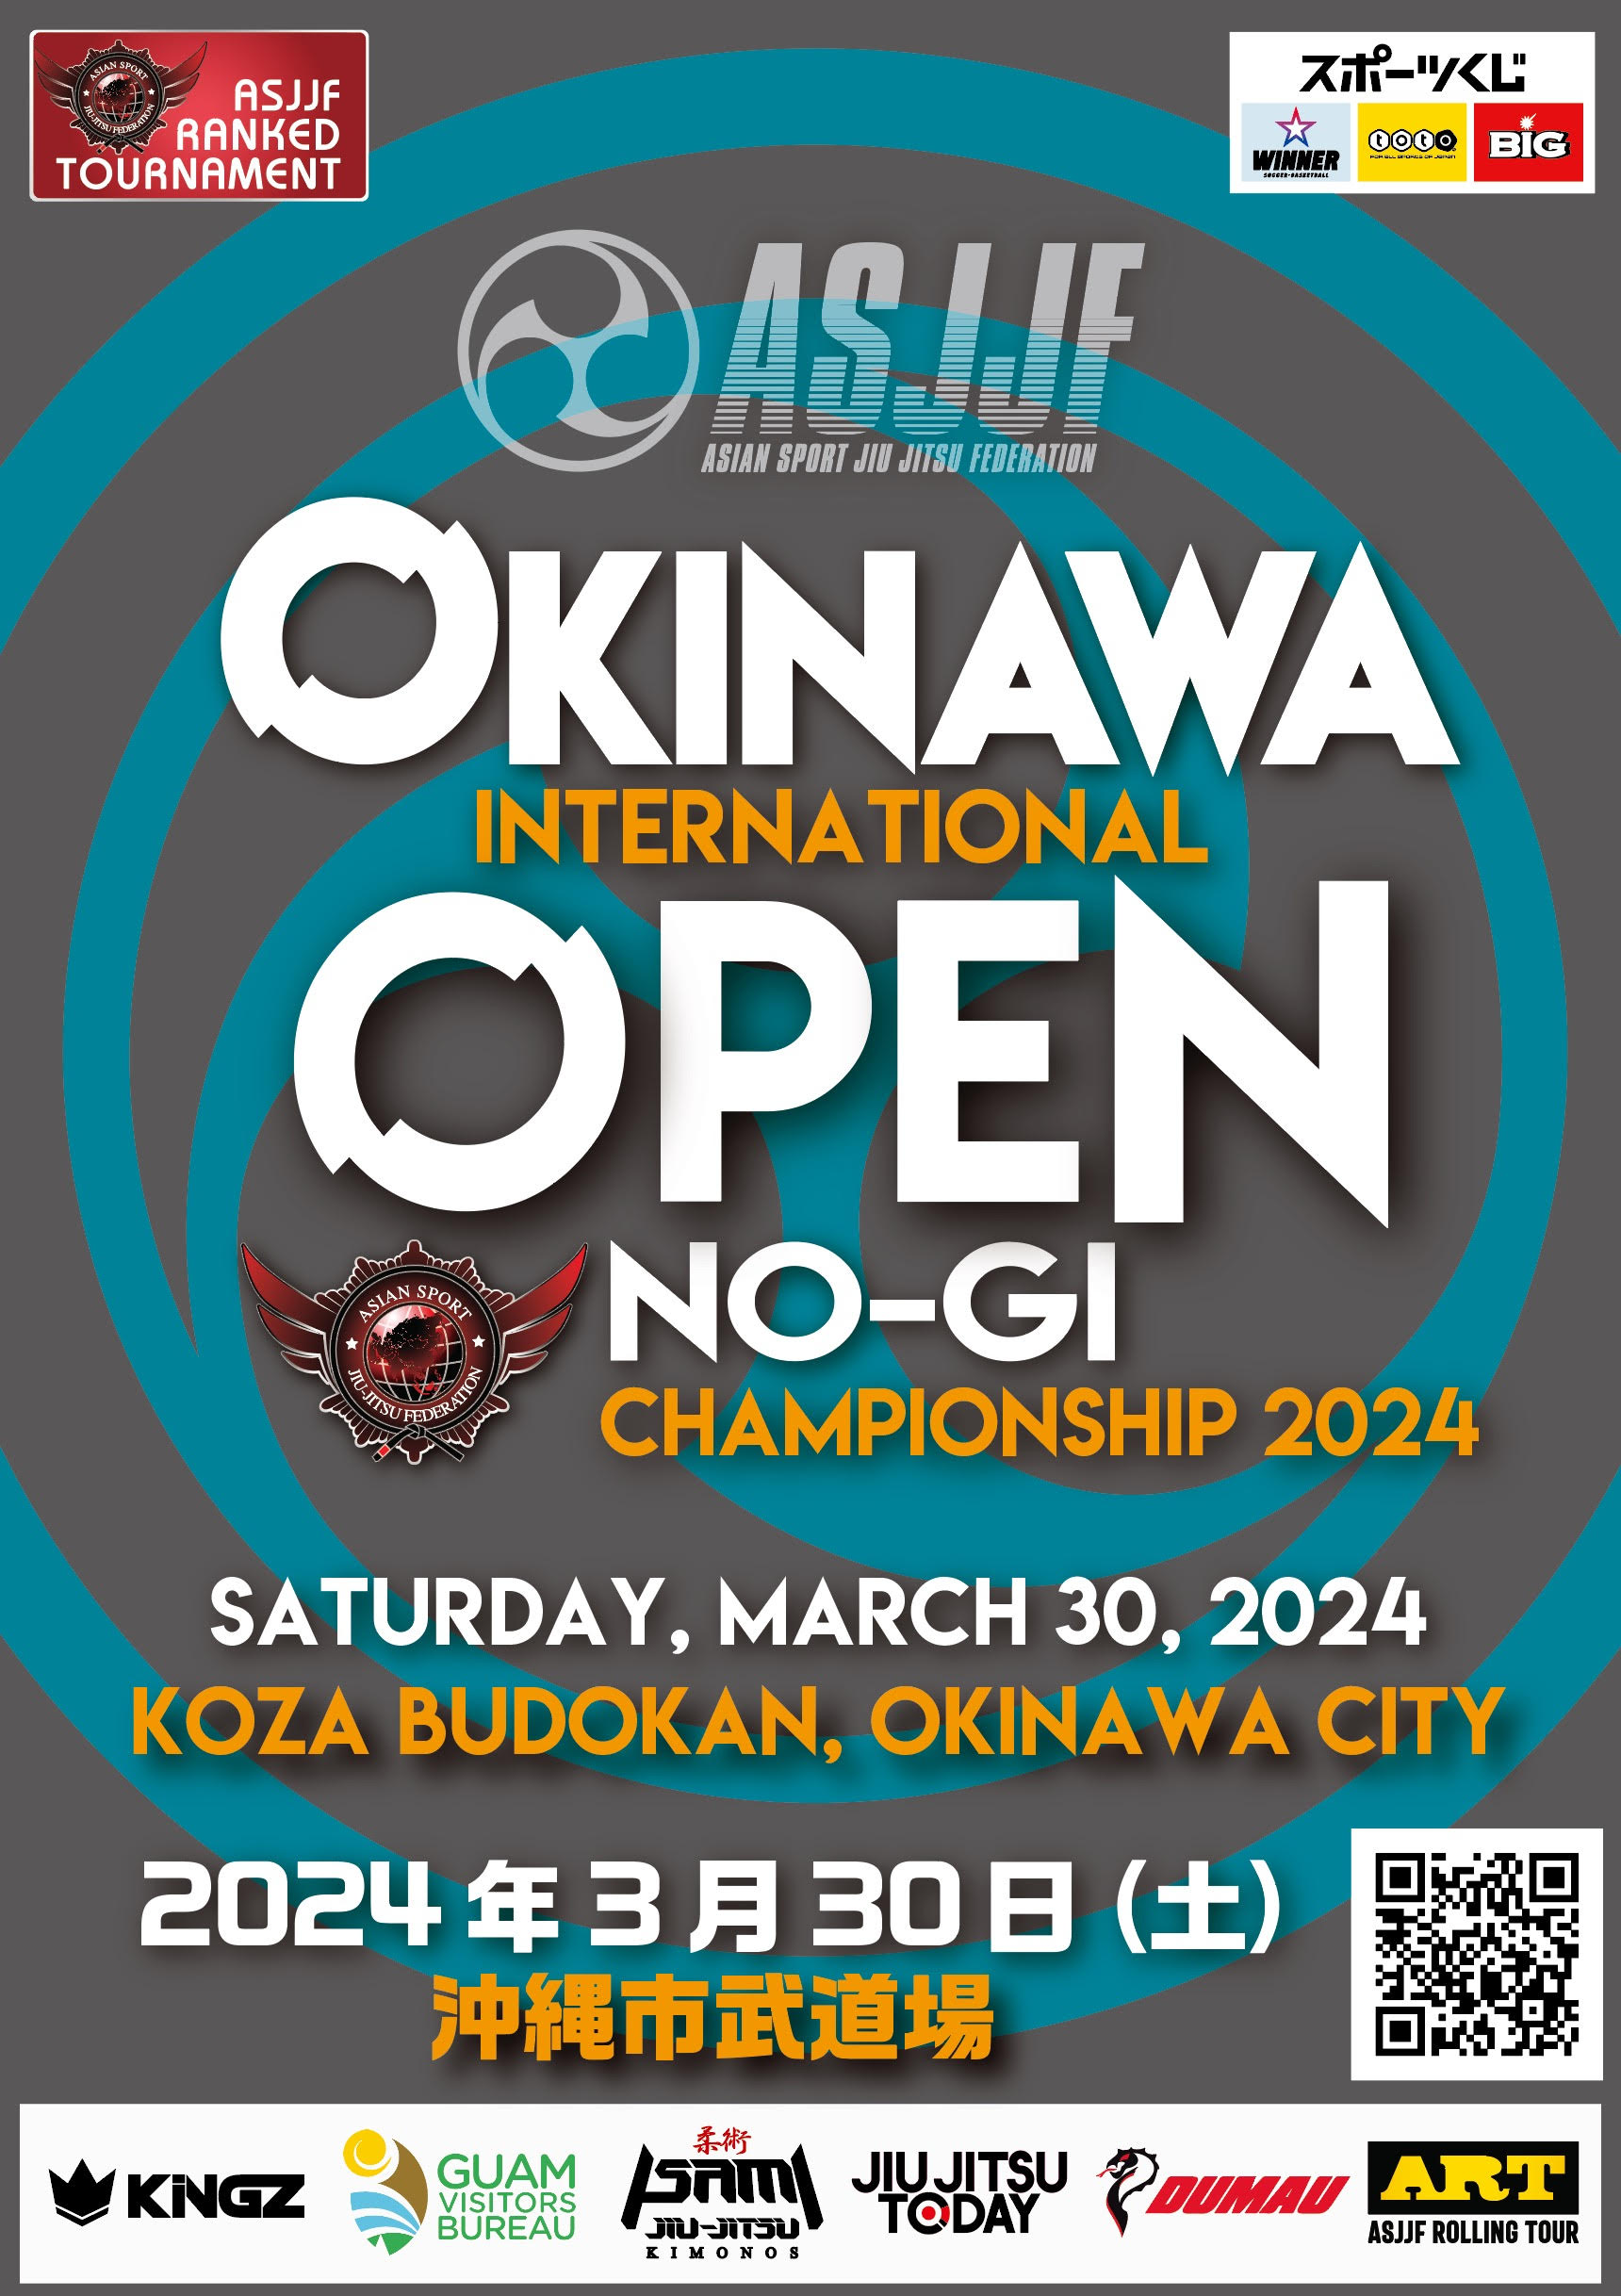 okinawa international open no-gi championship 2024. (NO-GI)